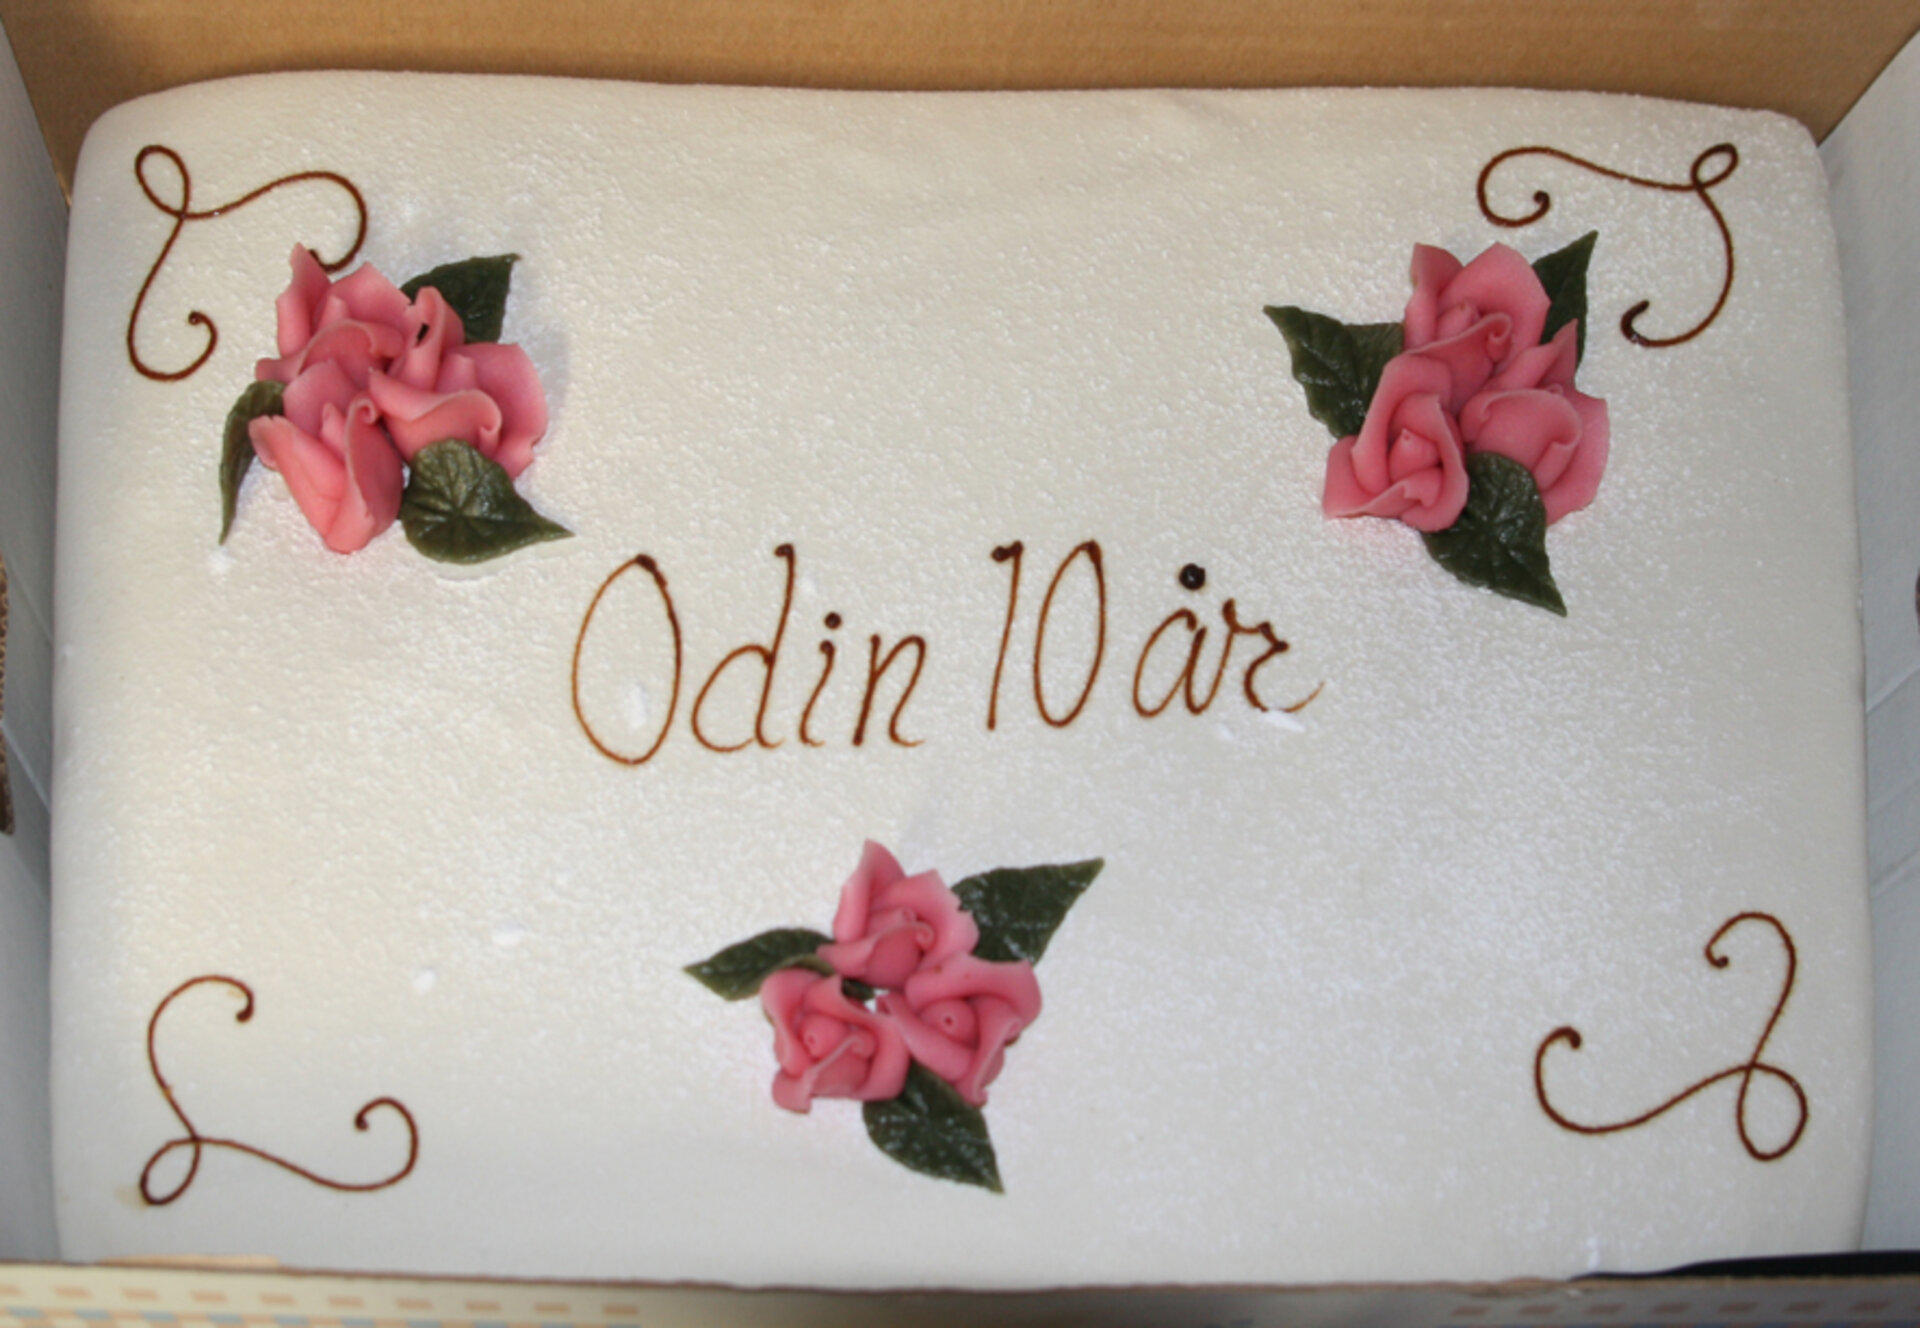 Odins födelsedsagstårta var populär.